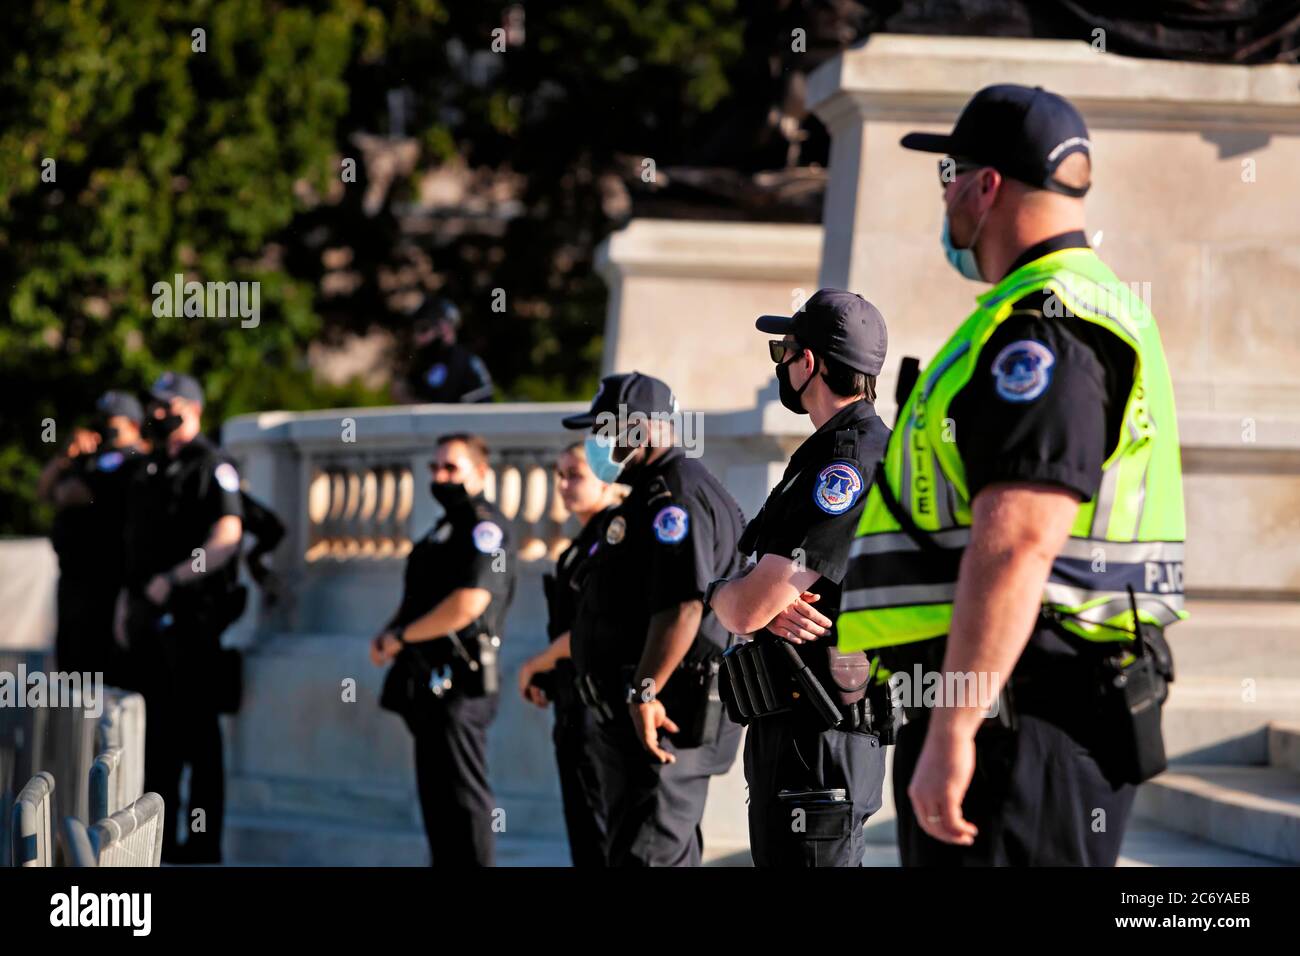 Statue de garde de police de l'abolitionniste et du général de l'Union Ulysses S. Grant d'un petit groupe de manifestants pacifiques, Washington, DC, Etats-Unis Banque D'Images